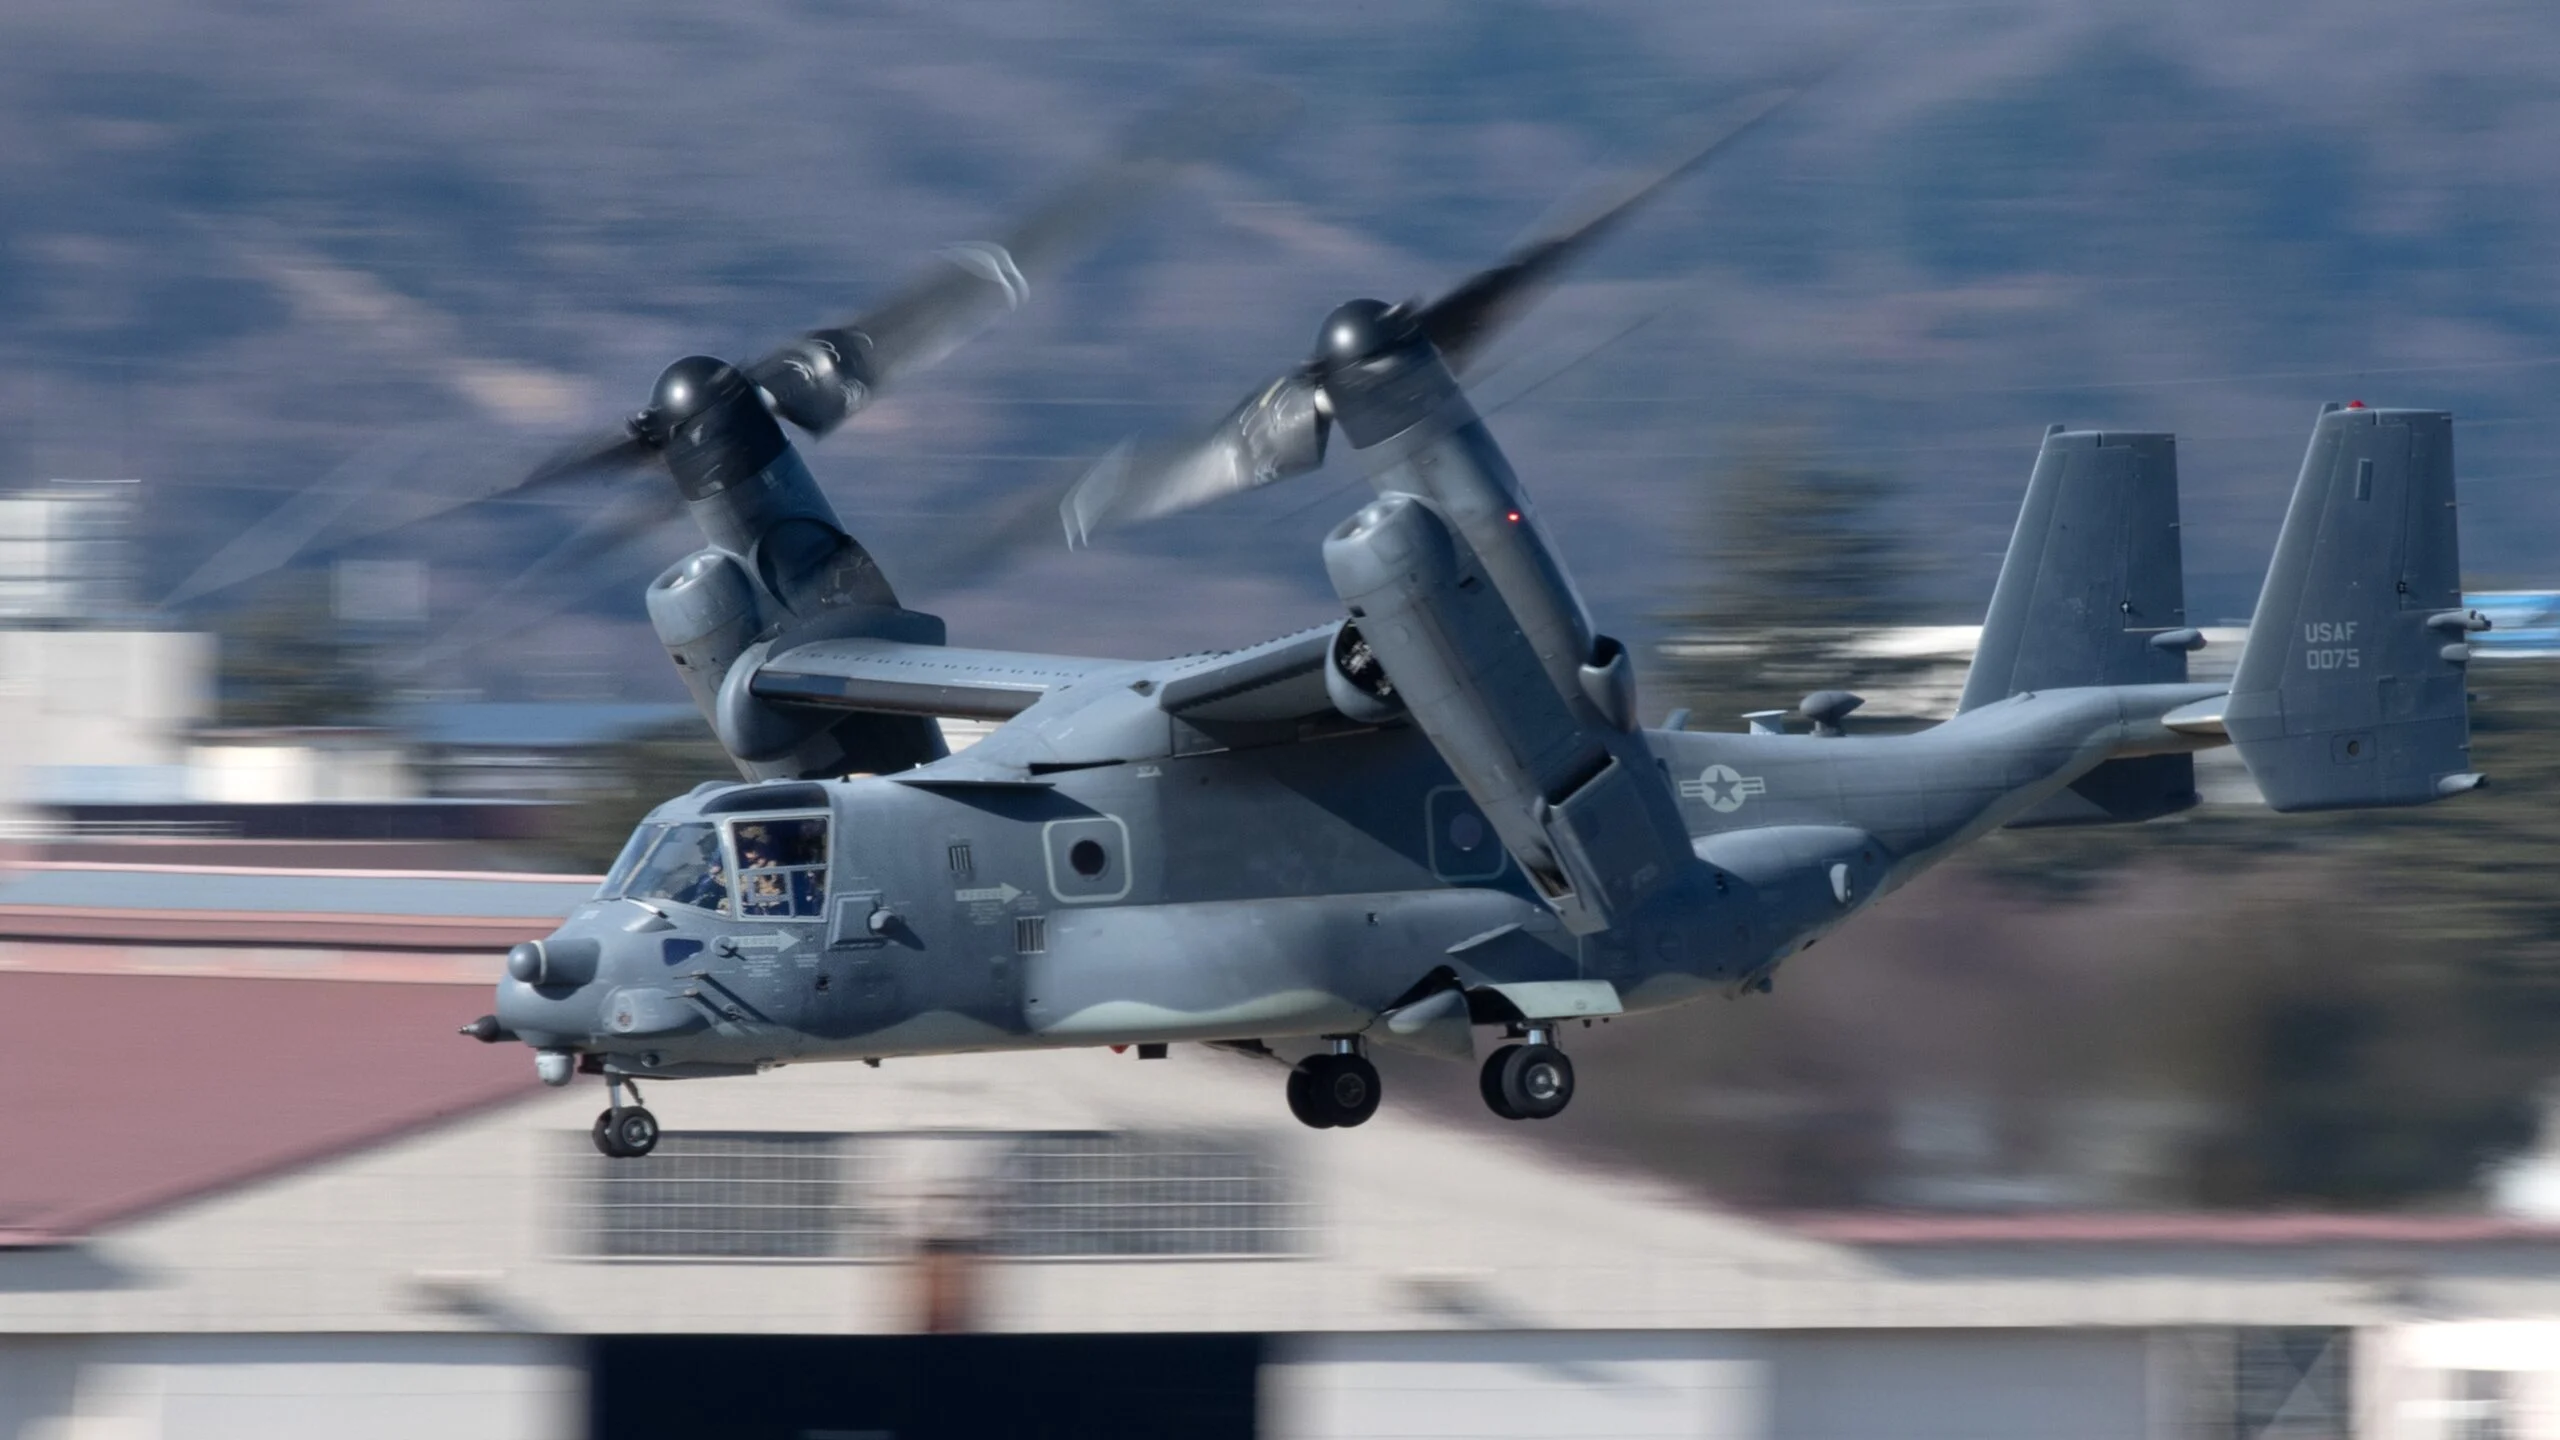 EE.UU. desembarca parte de los convertibles V-22 Osprey por fallos técnicos